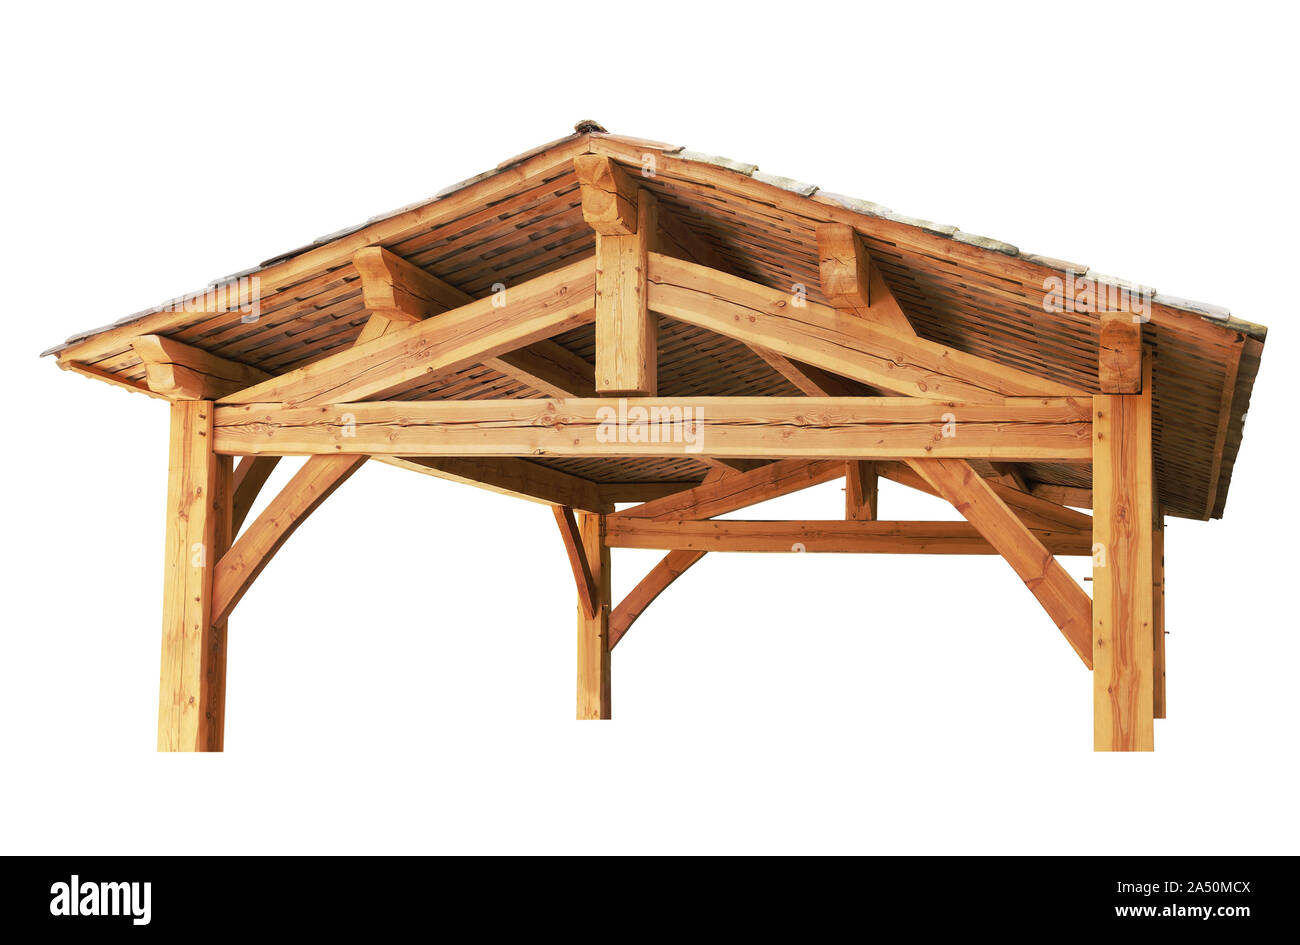 Holzrahmen unterstützt ein Dach in runden Fliesen. Weißer Hintergrund Stockfoto